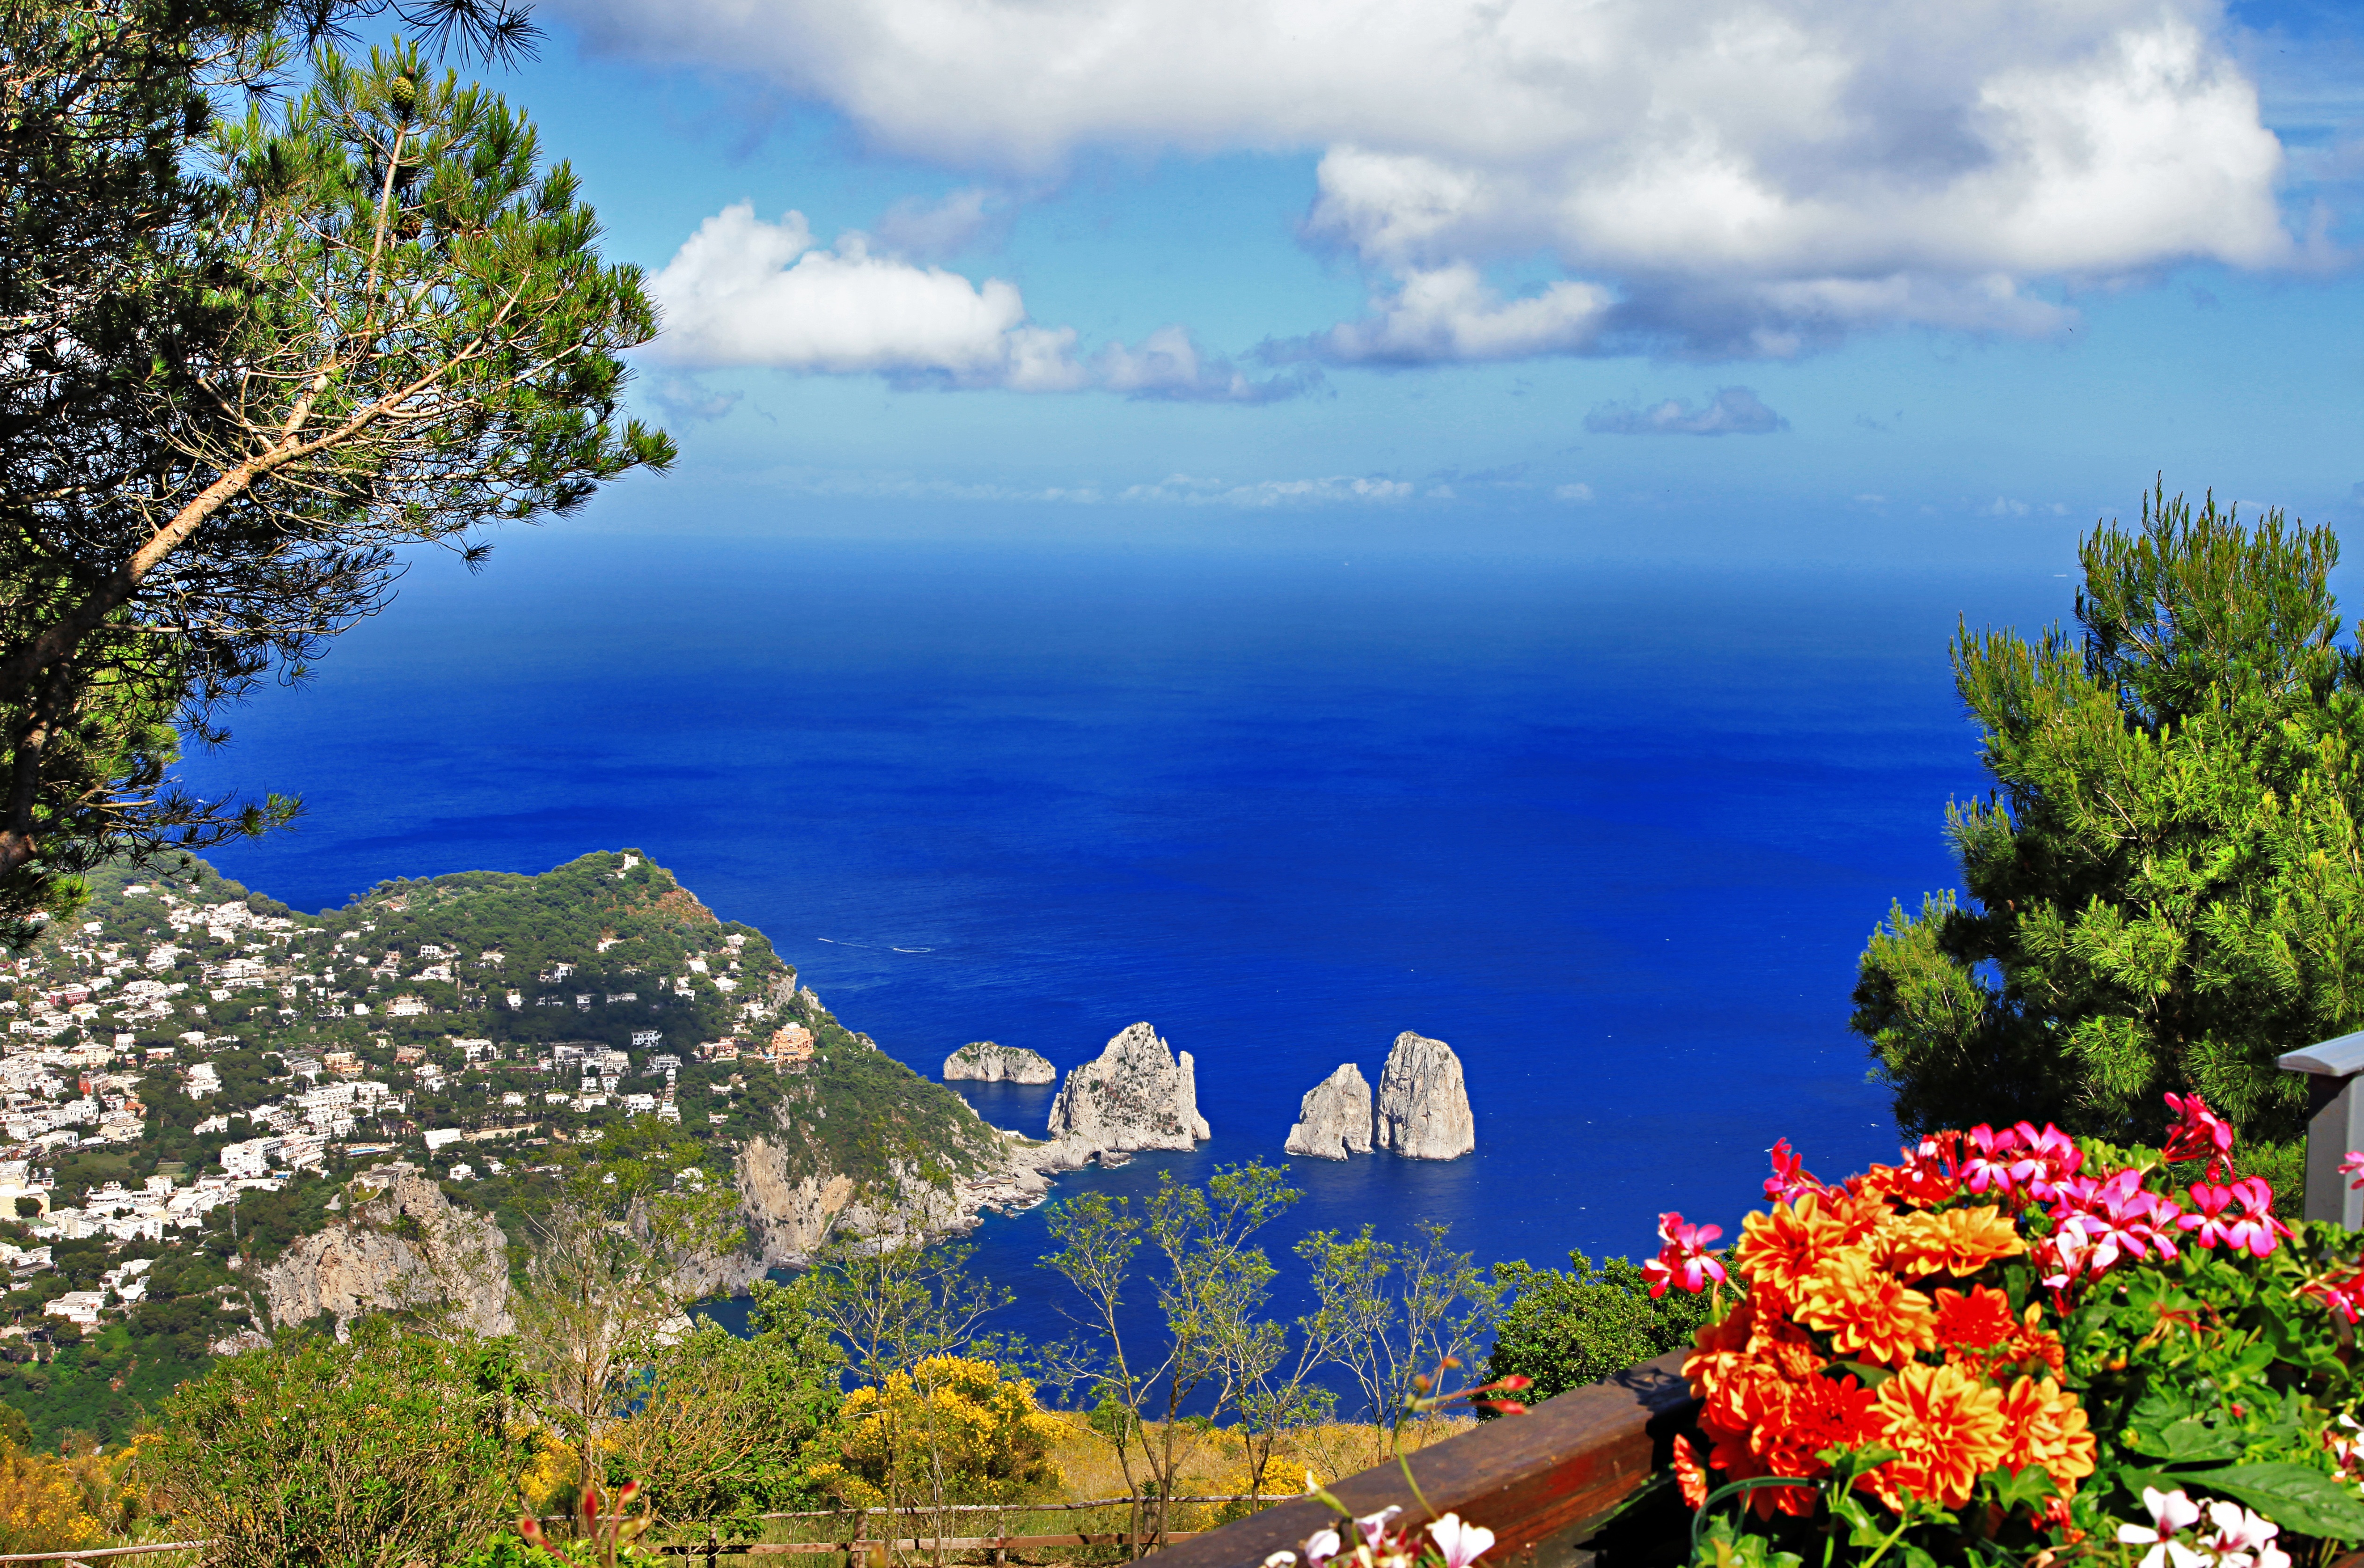 Hãy chiêm ngưỡng vẻ đẹp hoang sơ và thơ mộng của Đảo Capri Ý thông qua hình ảnh đầy màu sắc và nét đẹp tuyệt vời. Nơi đây không chỉ là điểm đến hoàn hảo cho các tín đồ du lịch mà còn là nơi lý tưởng để thư giãn và tận hưởng những khoảnh khắc yên bình.